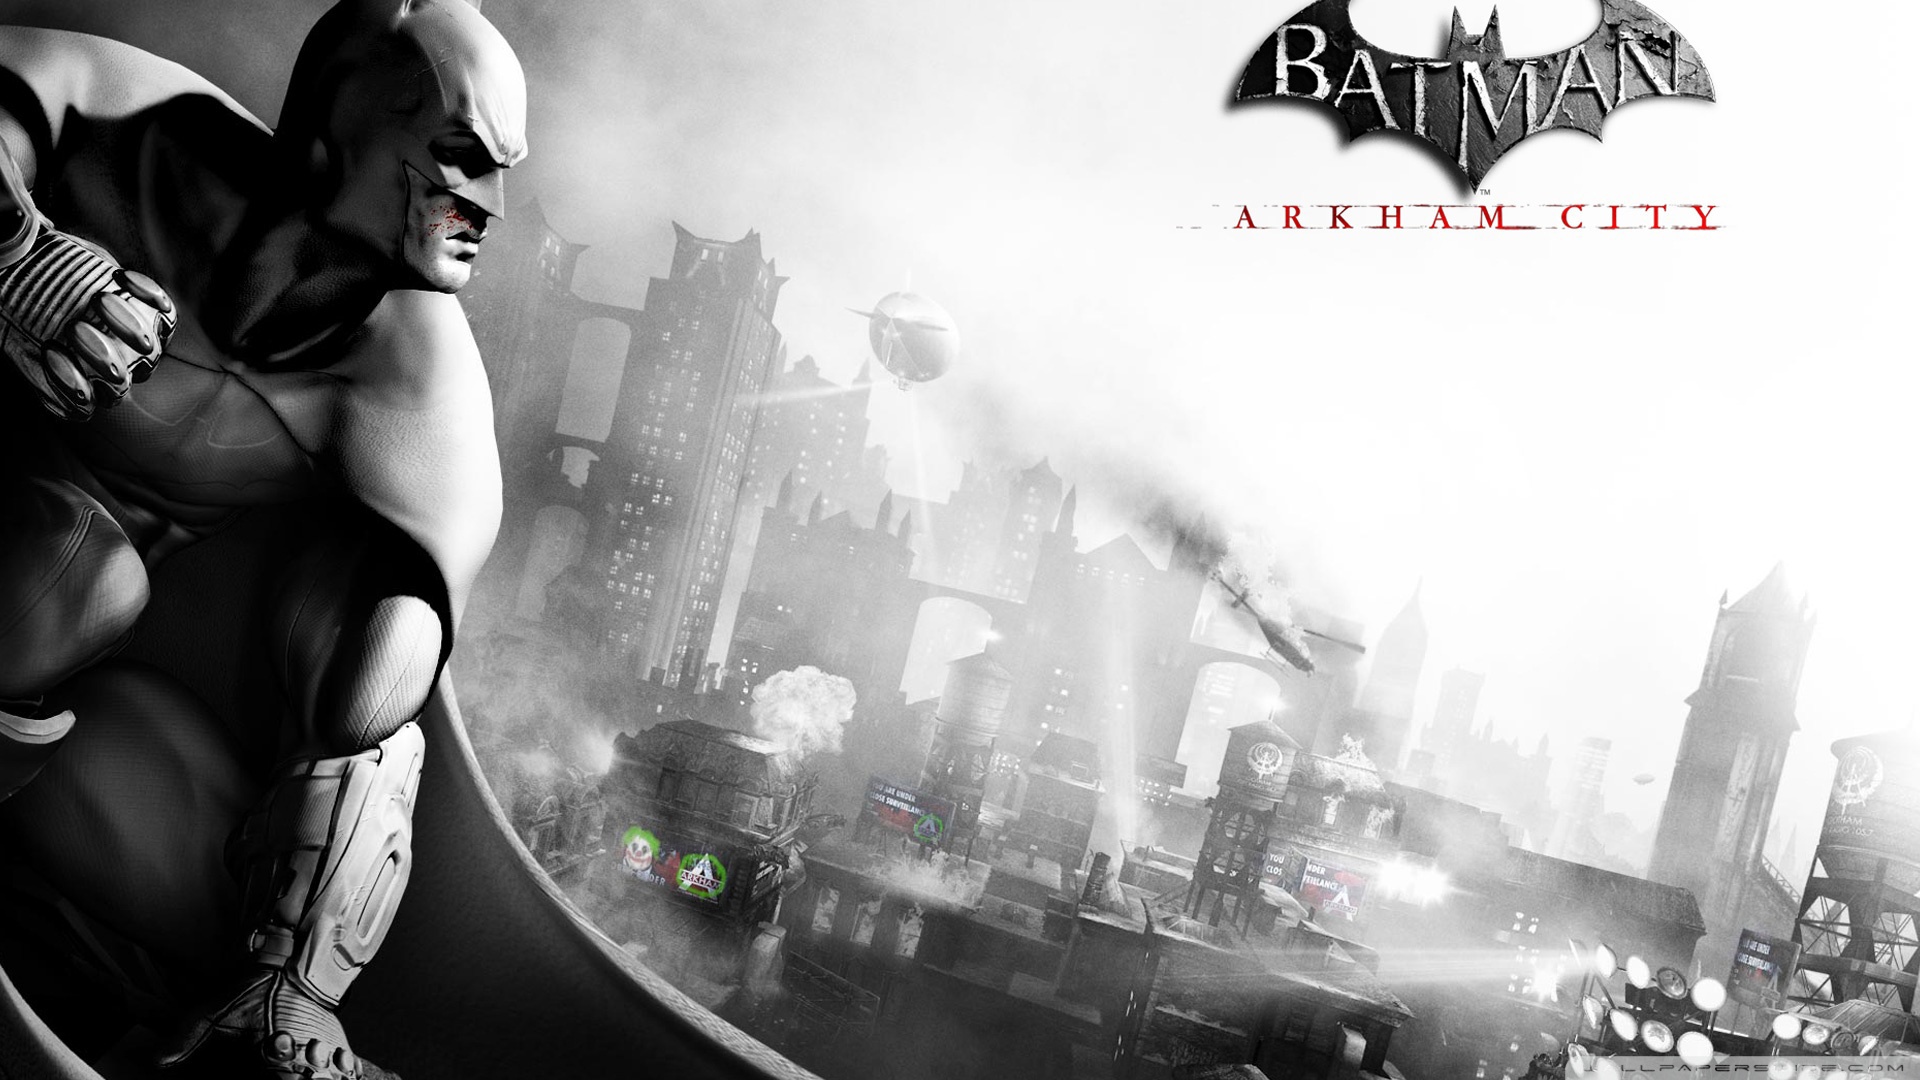 Batman: Arkham City wallpaper 04 1920x1080